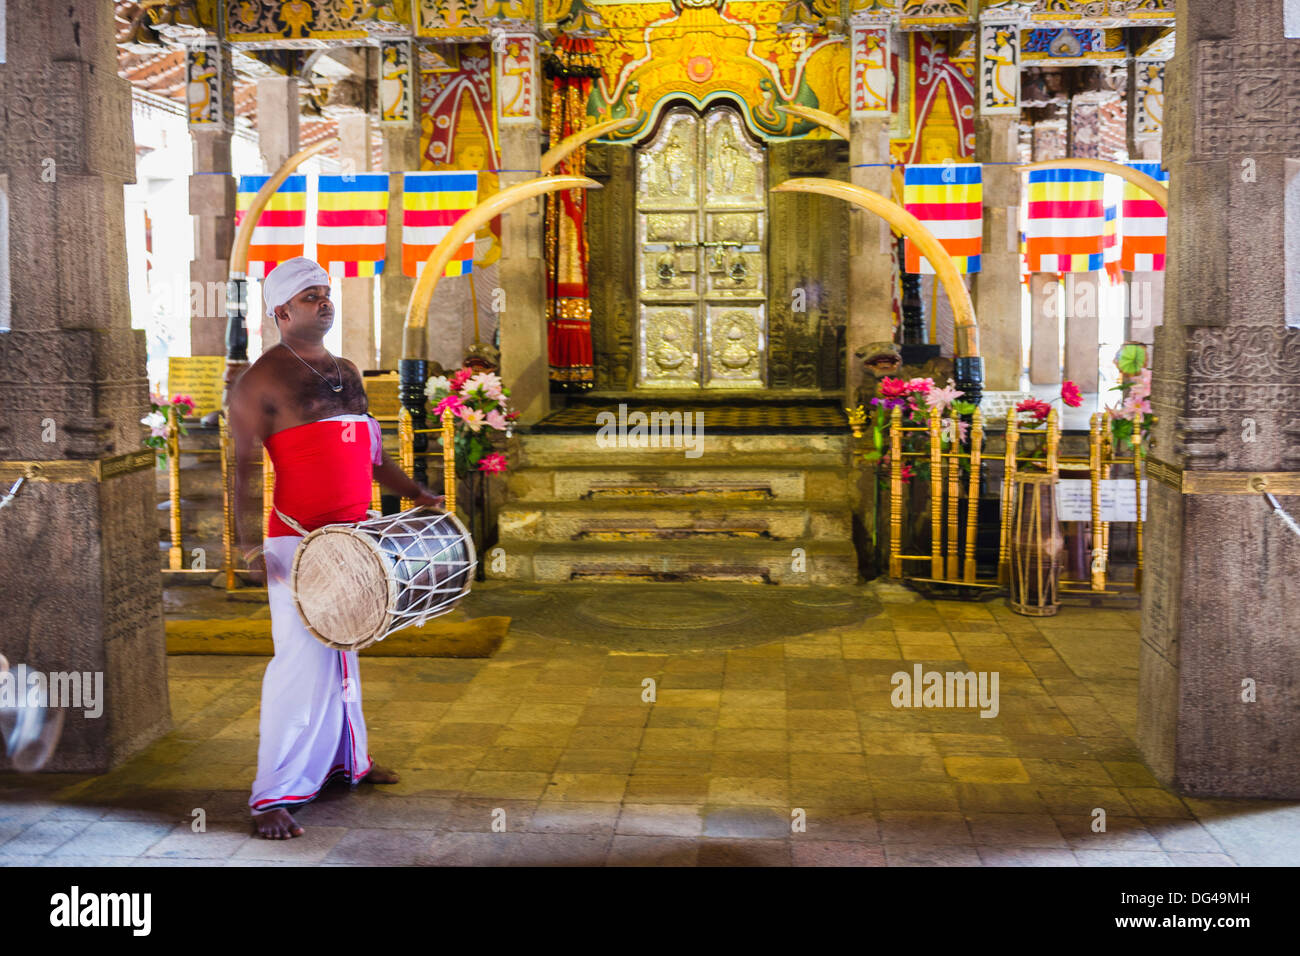 Le batteur de tambour au Temple de la Dent sacrée (Temple de la dent) (Sri Dalada Maligawa) dans la région de Kandy, Sri Lanka, Asie Banque D'Images